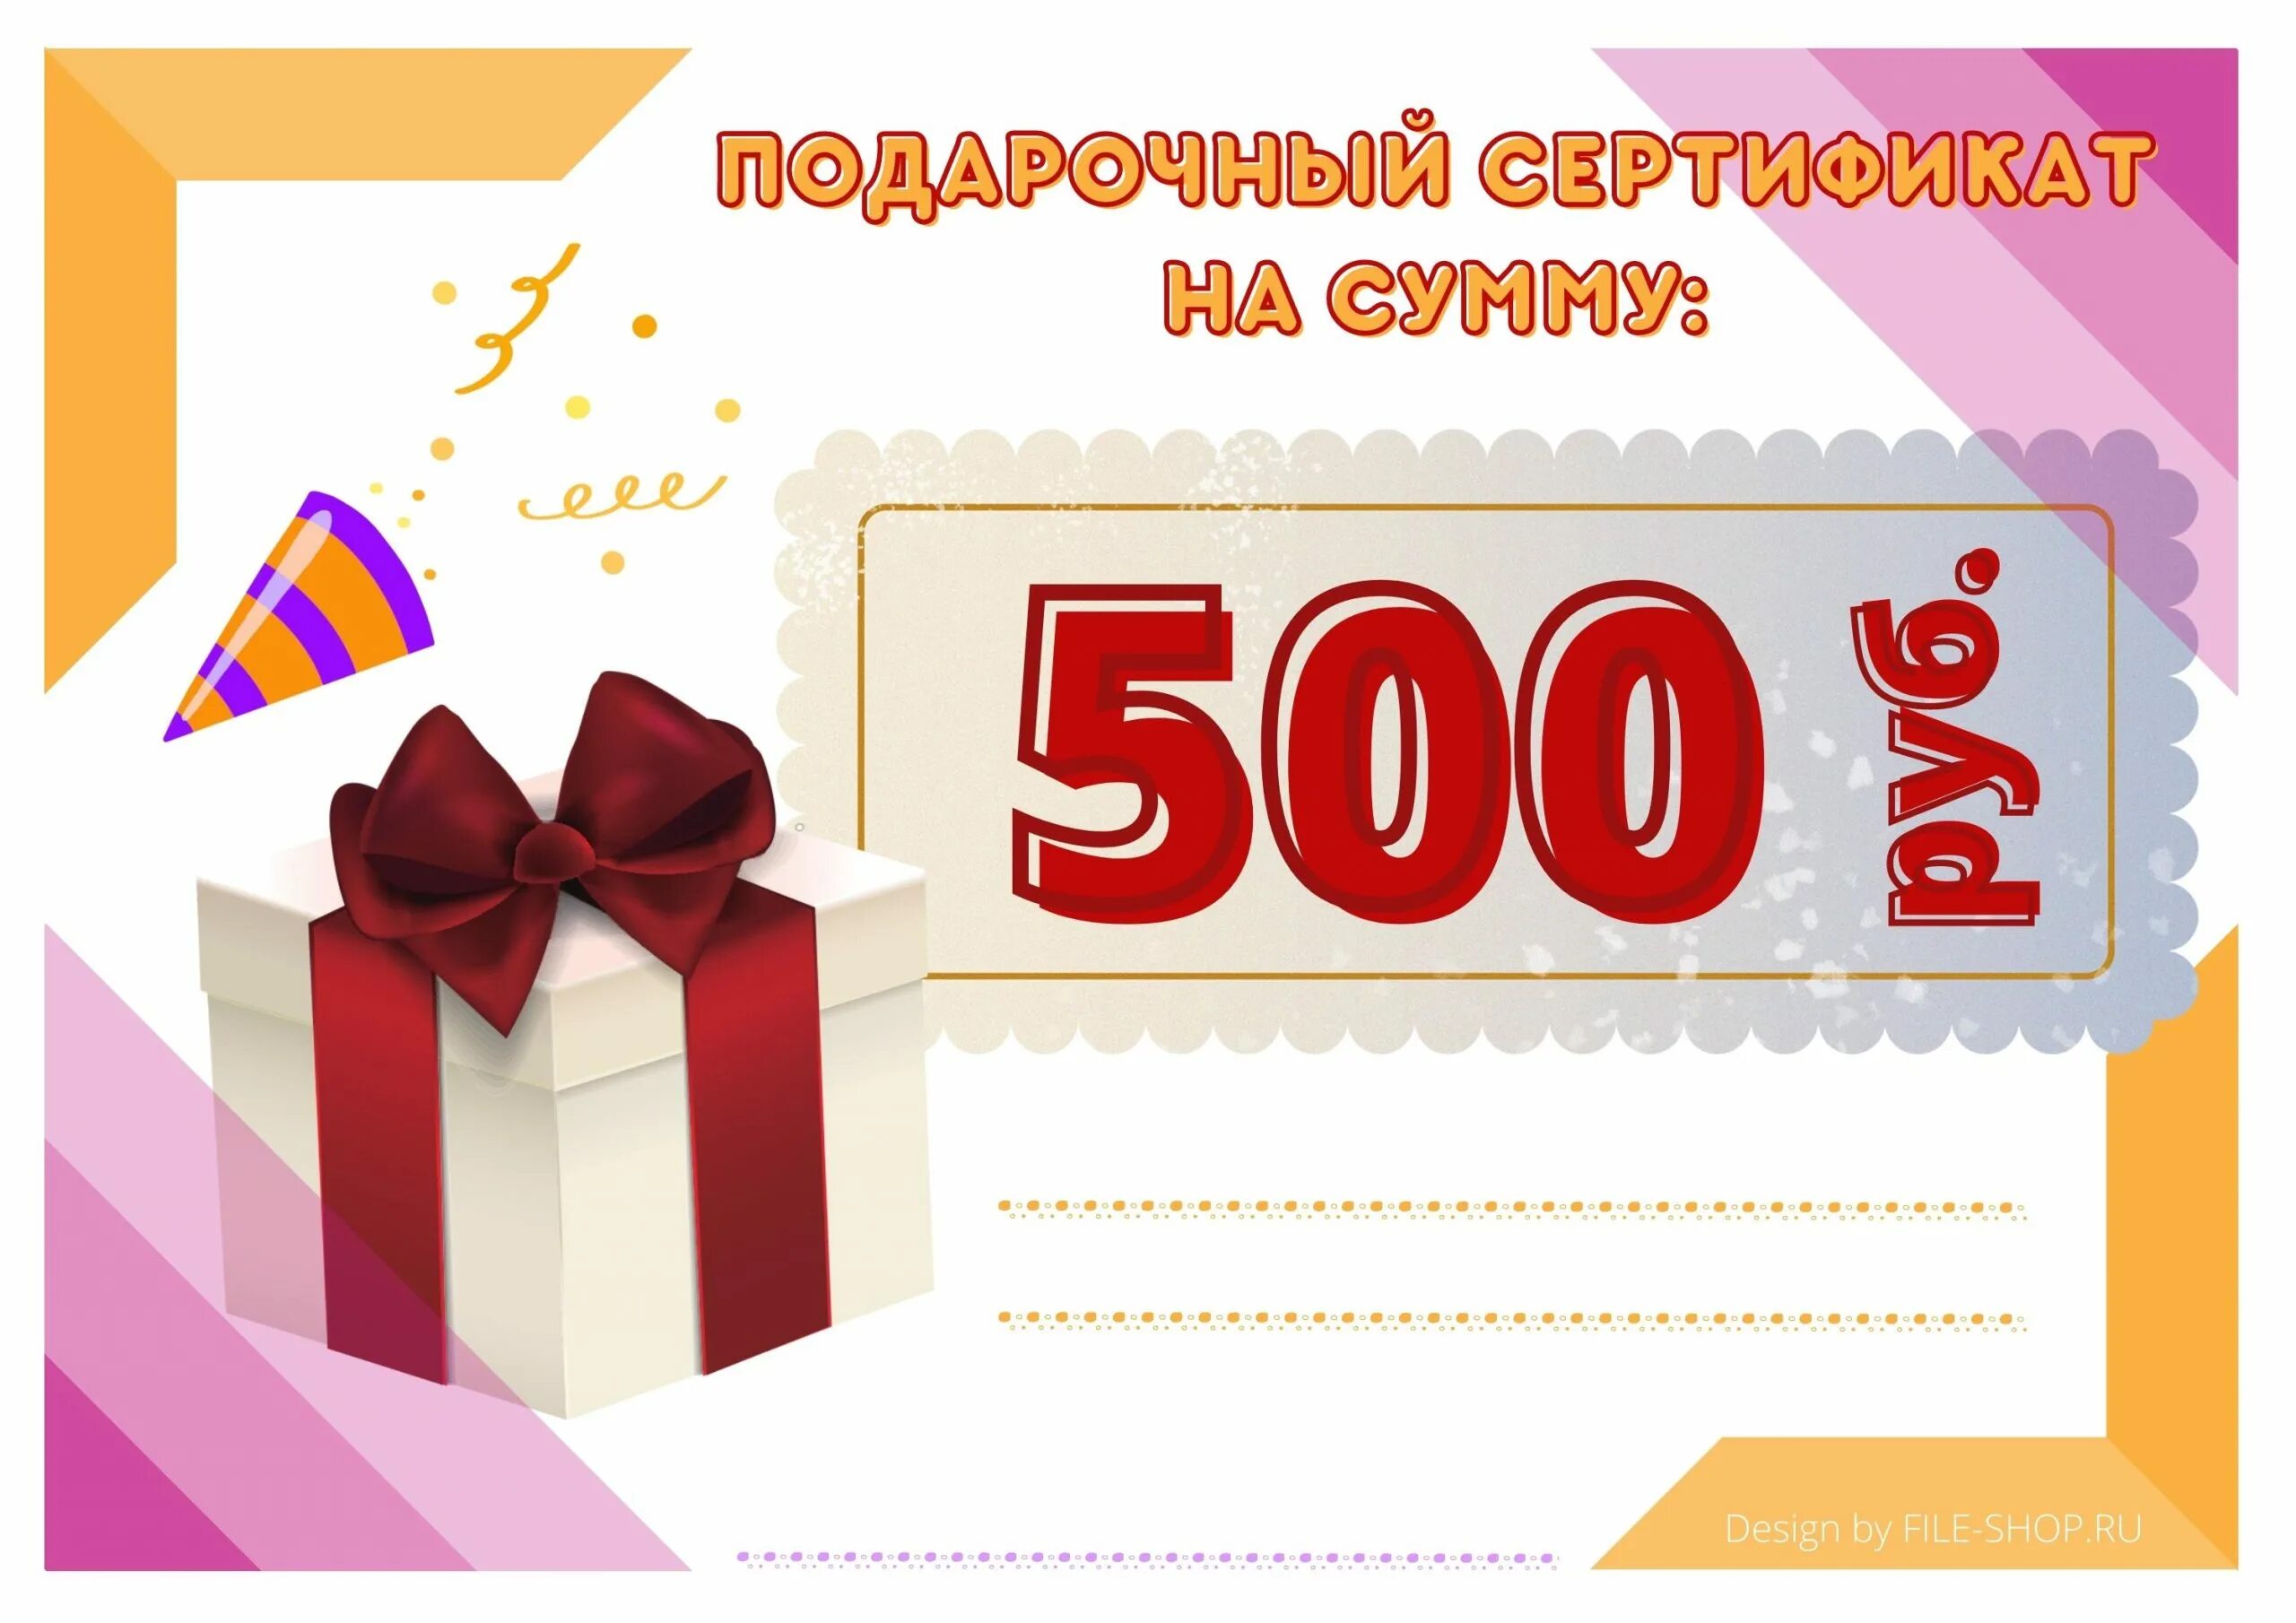 Подарочный сертификат на 500р.. Подарочный сертификат на 500 рублей. Подарочный сертификат на 1000 рублей. Сертификат подарочный 500.